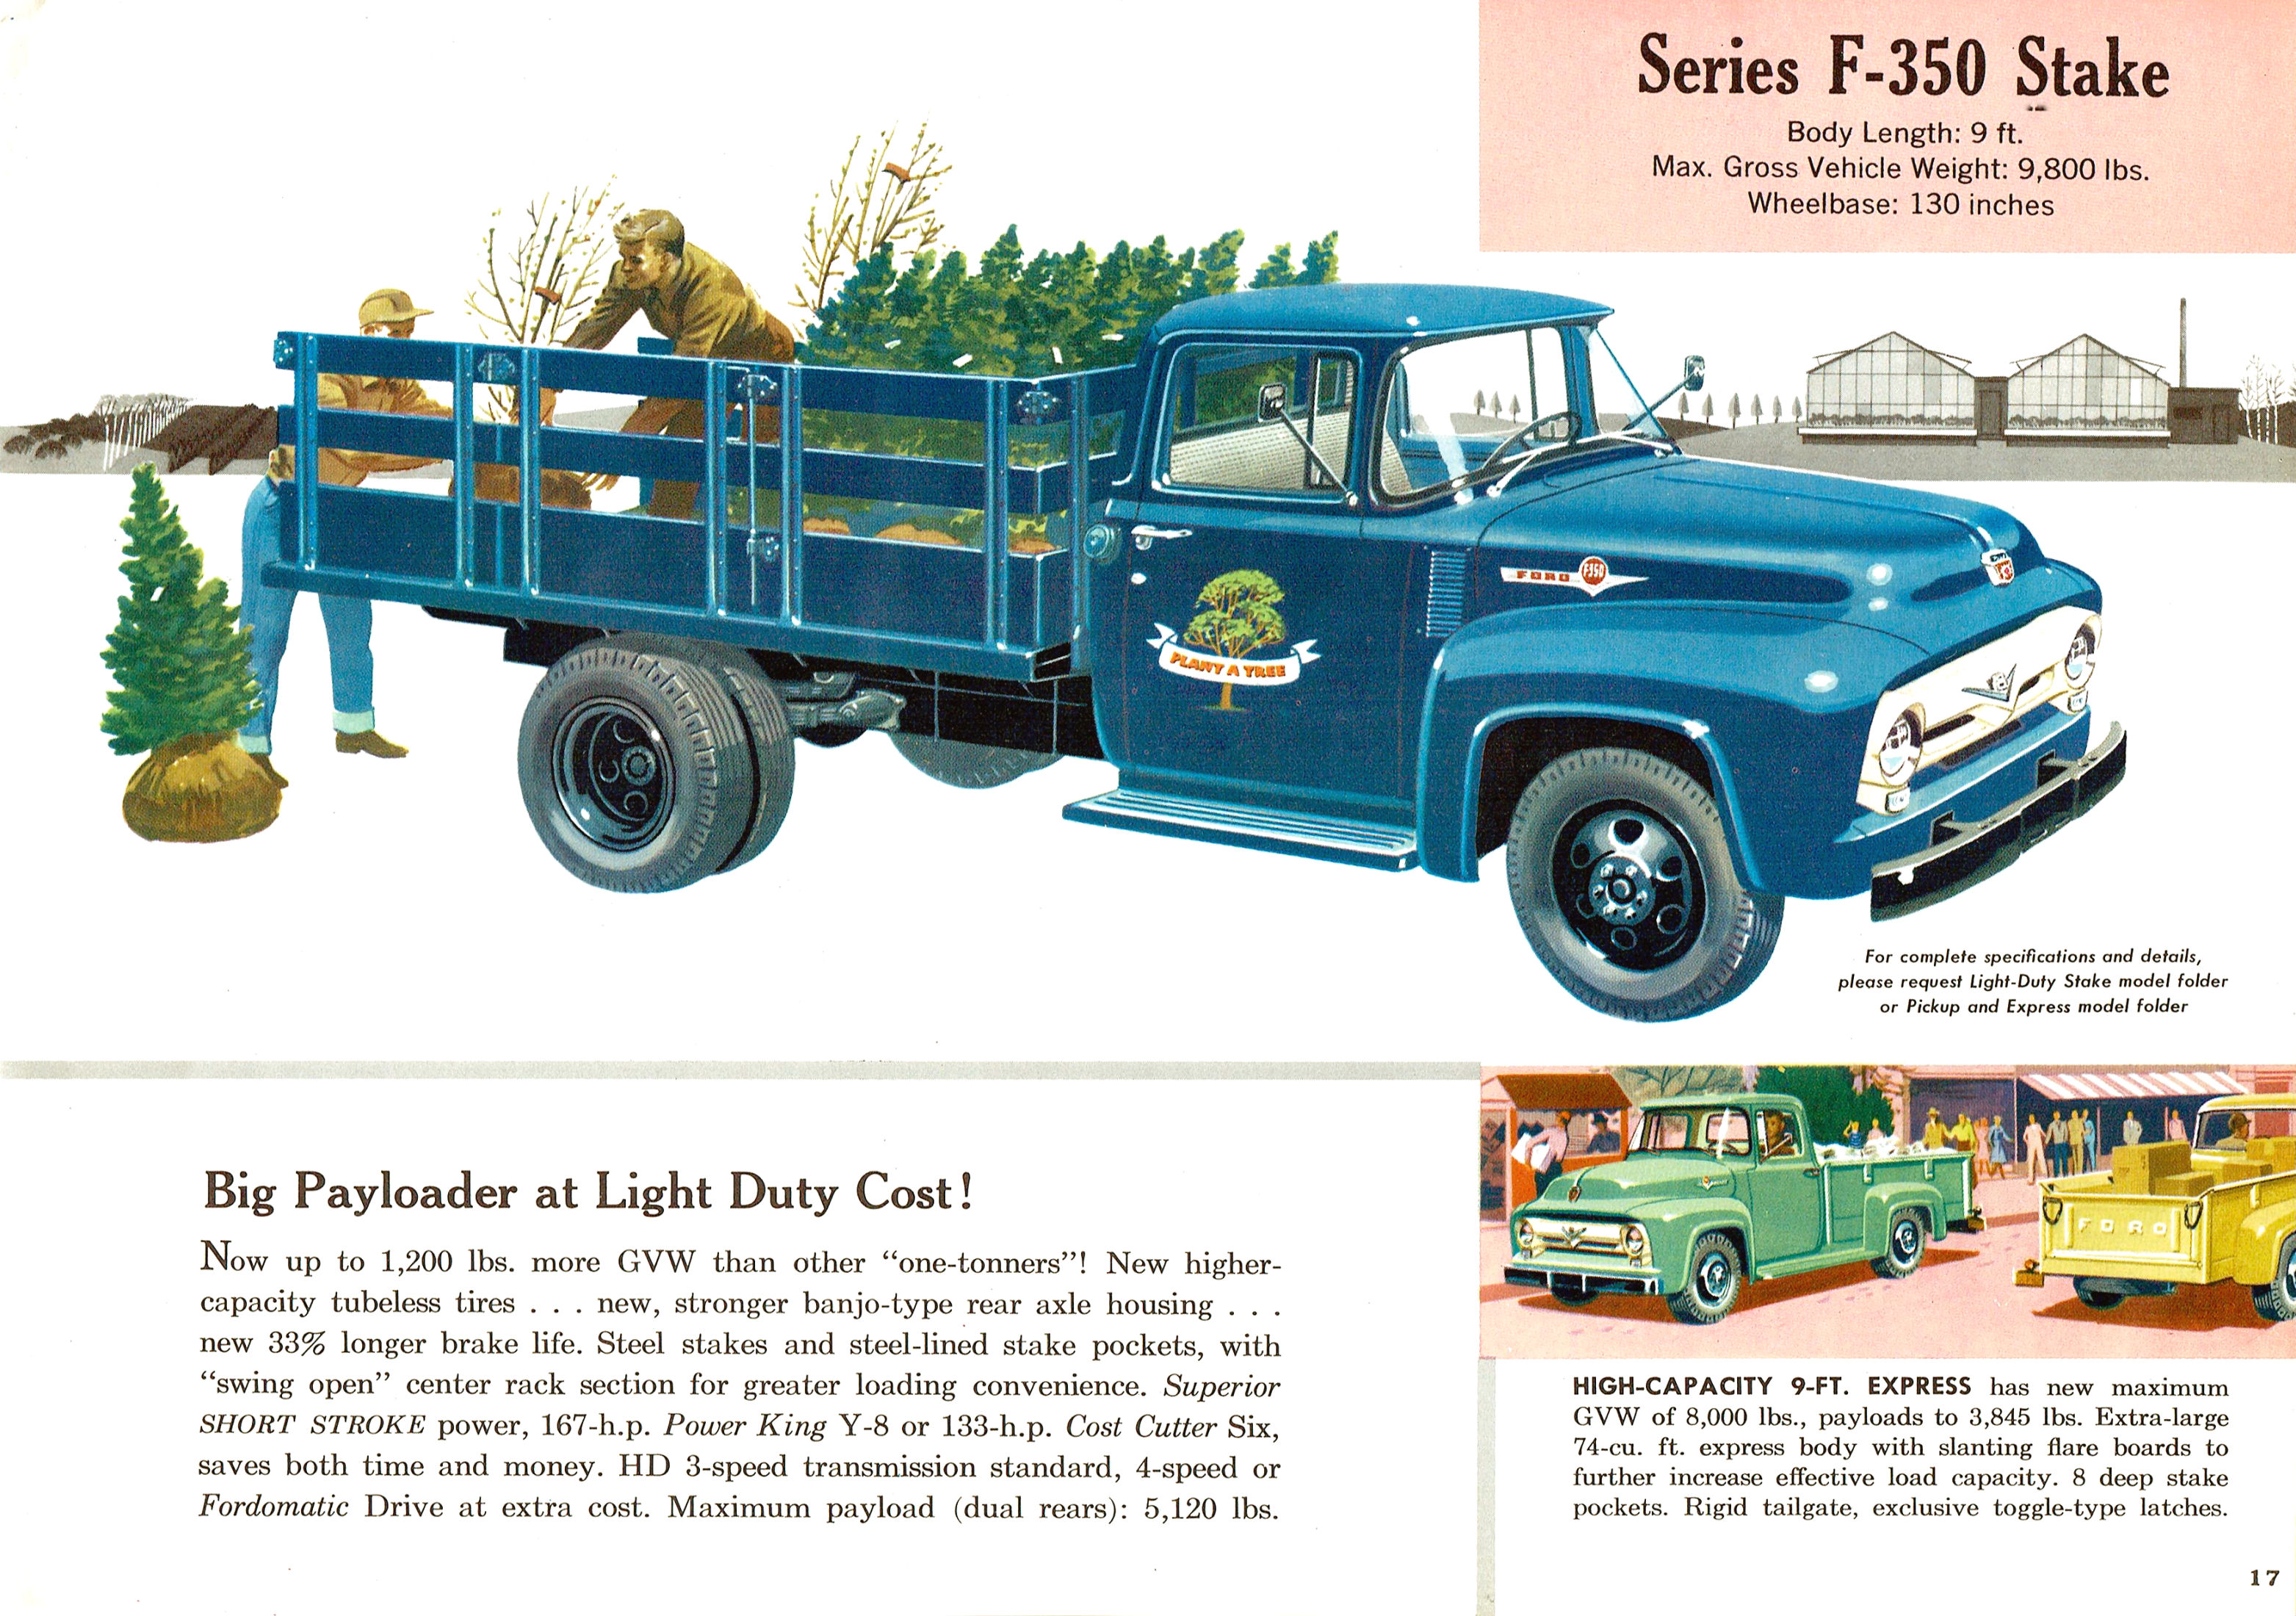 1956 Ford Trucks Full Line-17